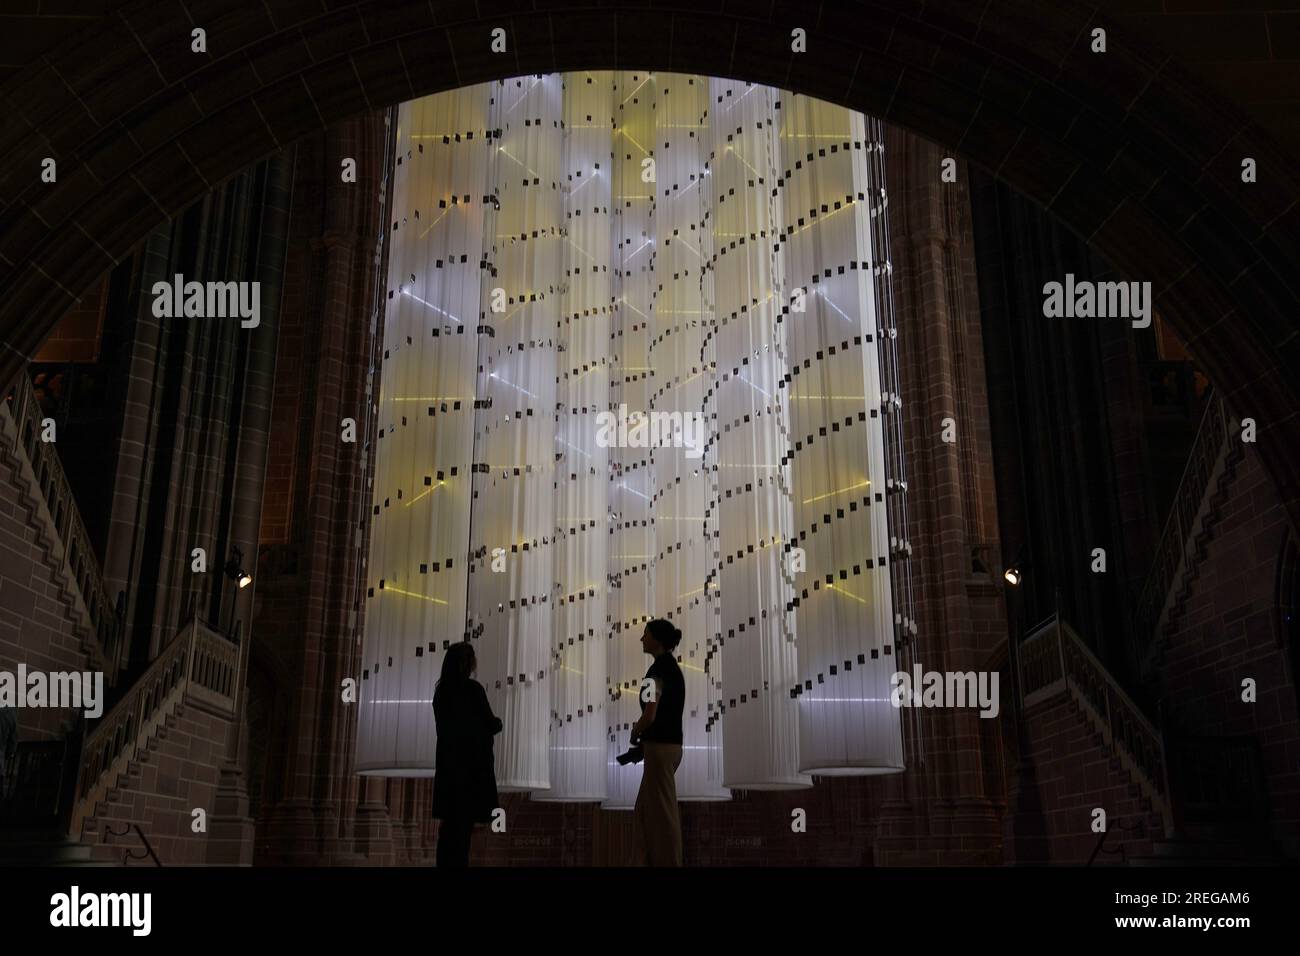 L'installation de l'artiste Peter Walker, intitulée "identité - nous sommes tous ensemble" à la cathédrale de Liverpool. L’installation, la troisième de sa série à succès, introduit sept colonnes lumineuses, suspendues au-dessus du puits. Chaque colonne est éclairée, avec des bandes de lumière individuelles représentant la double hélice de l'ADN et démontrant la composition unique de chaque personne et ensemble les sept colonnes représentent les différences distinctes de l'humanité. L'œuvre sera disponible jusqu'en septembre 3. Date de la photo : Vendredi 28 juillet 2023. Banque D'Images